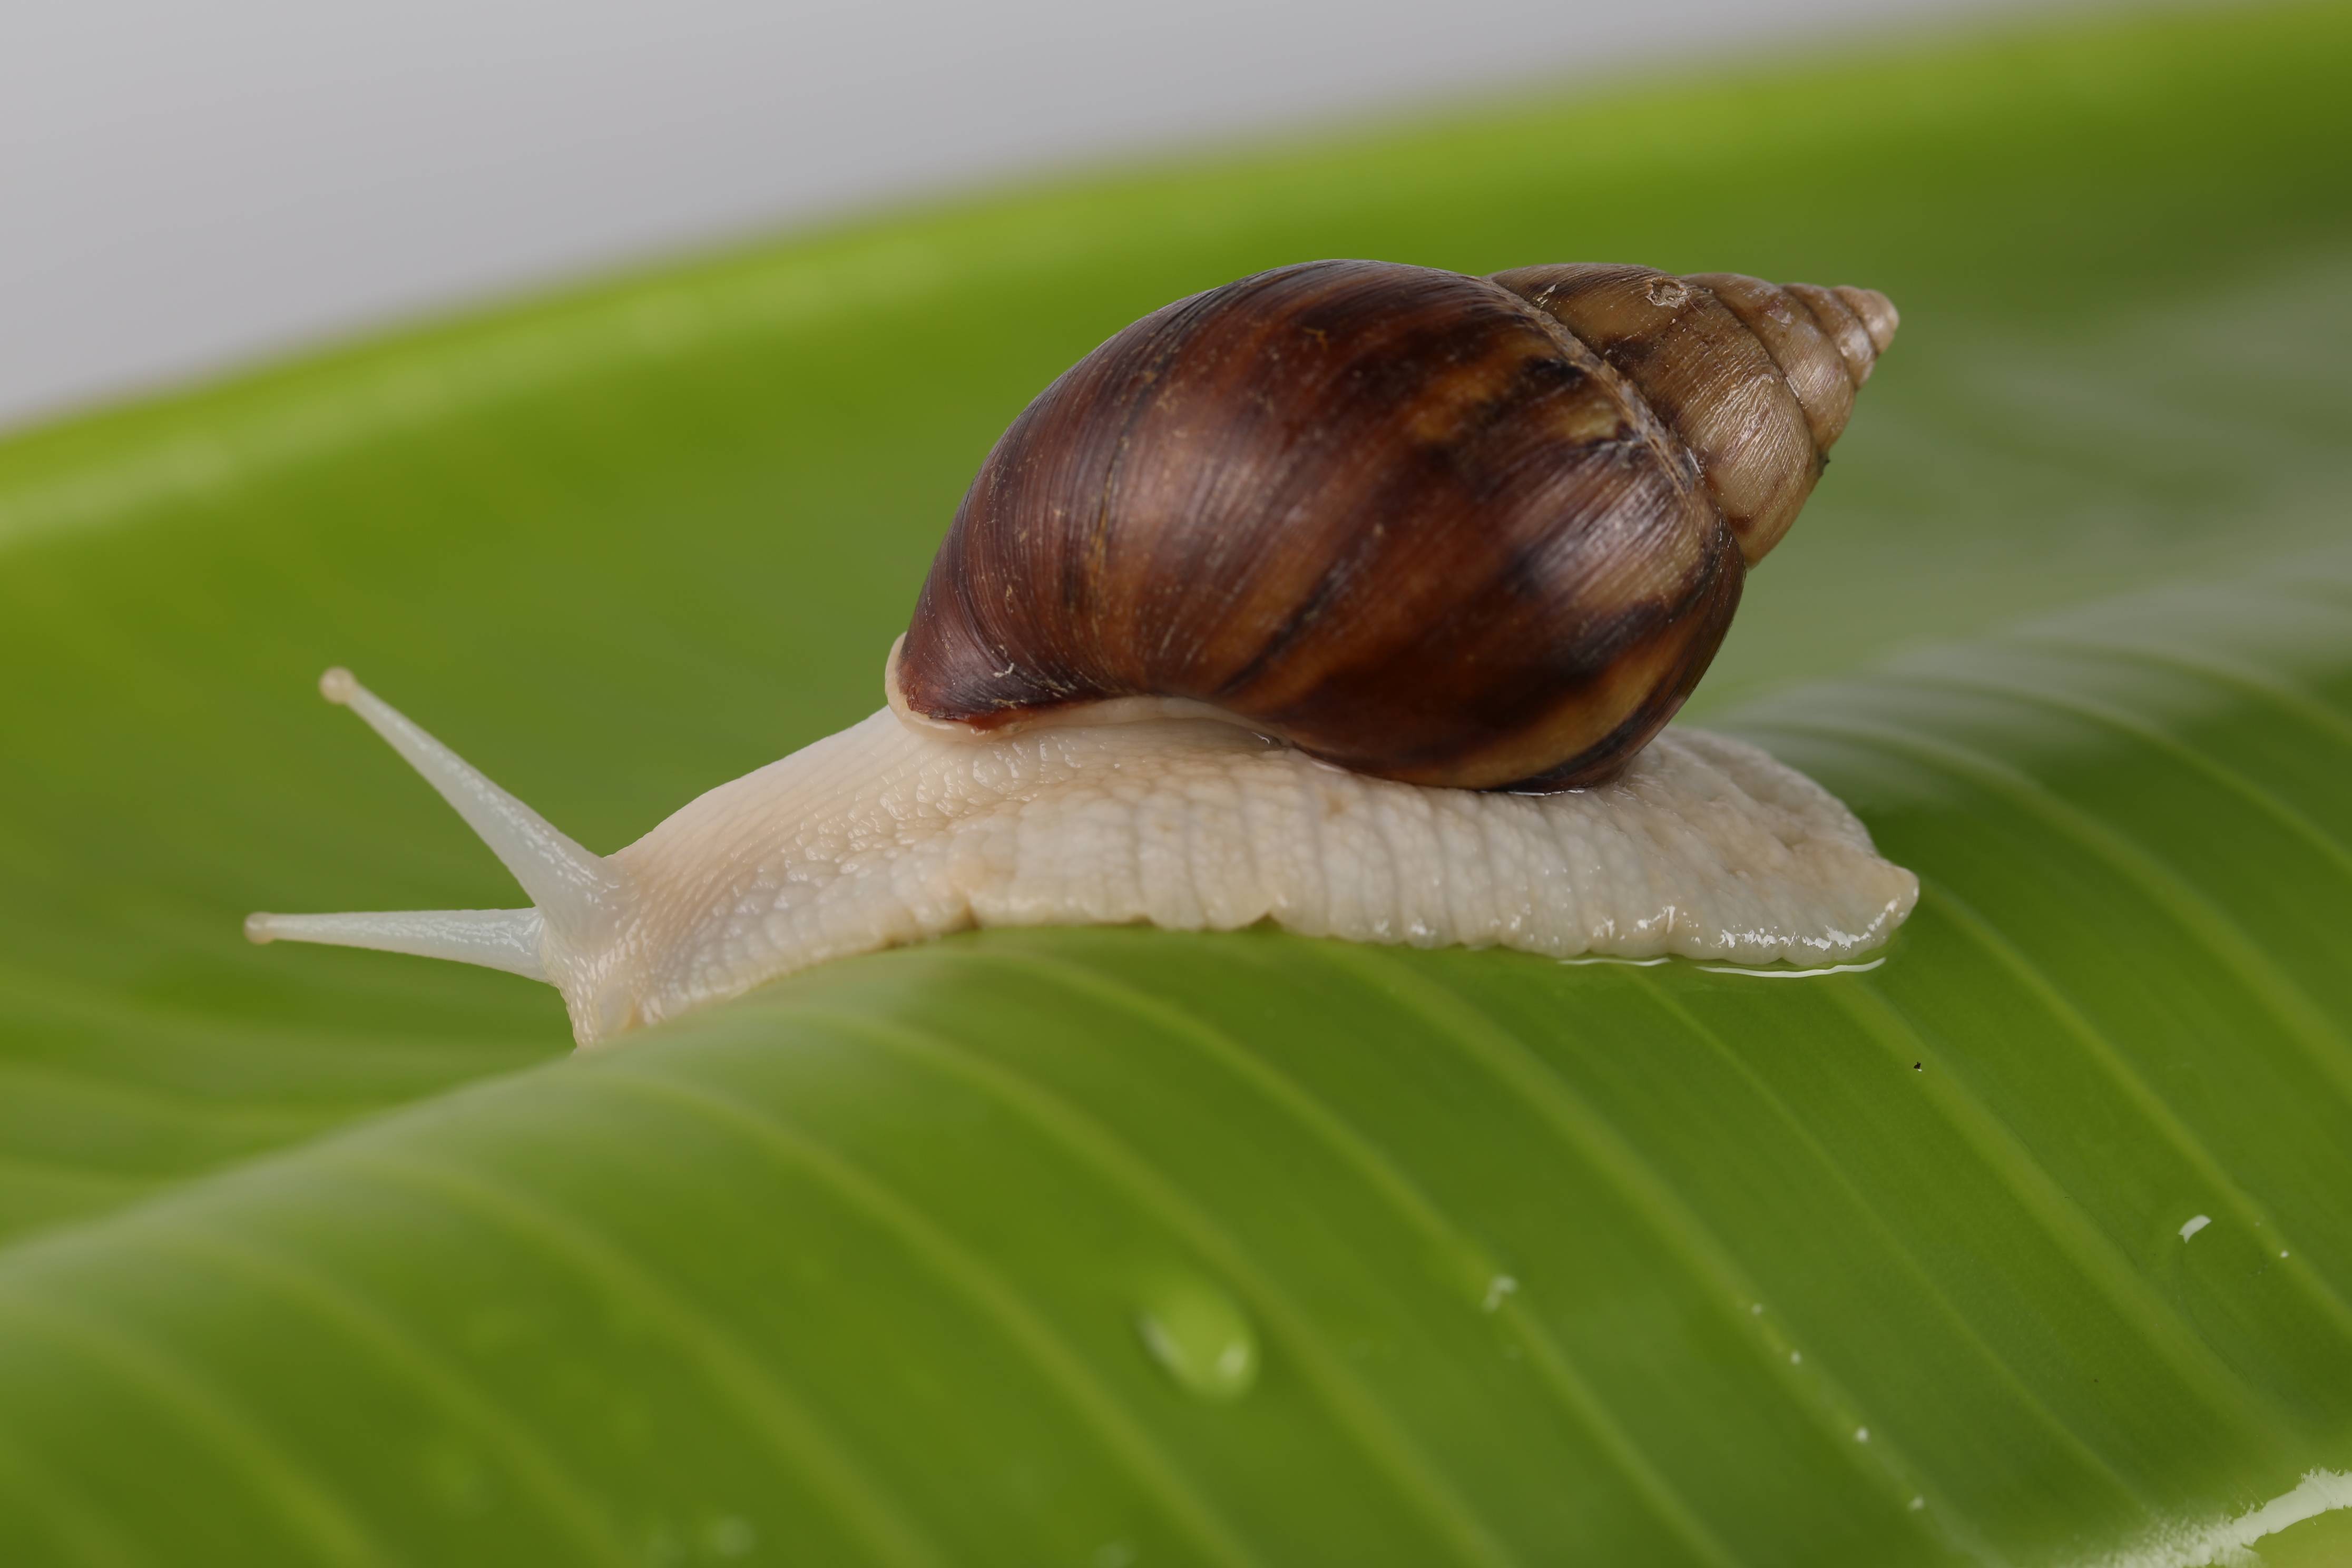 辉芮生物详解白玉蜗牛的十种价值成分